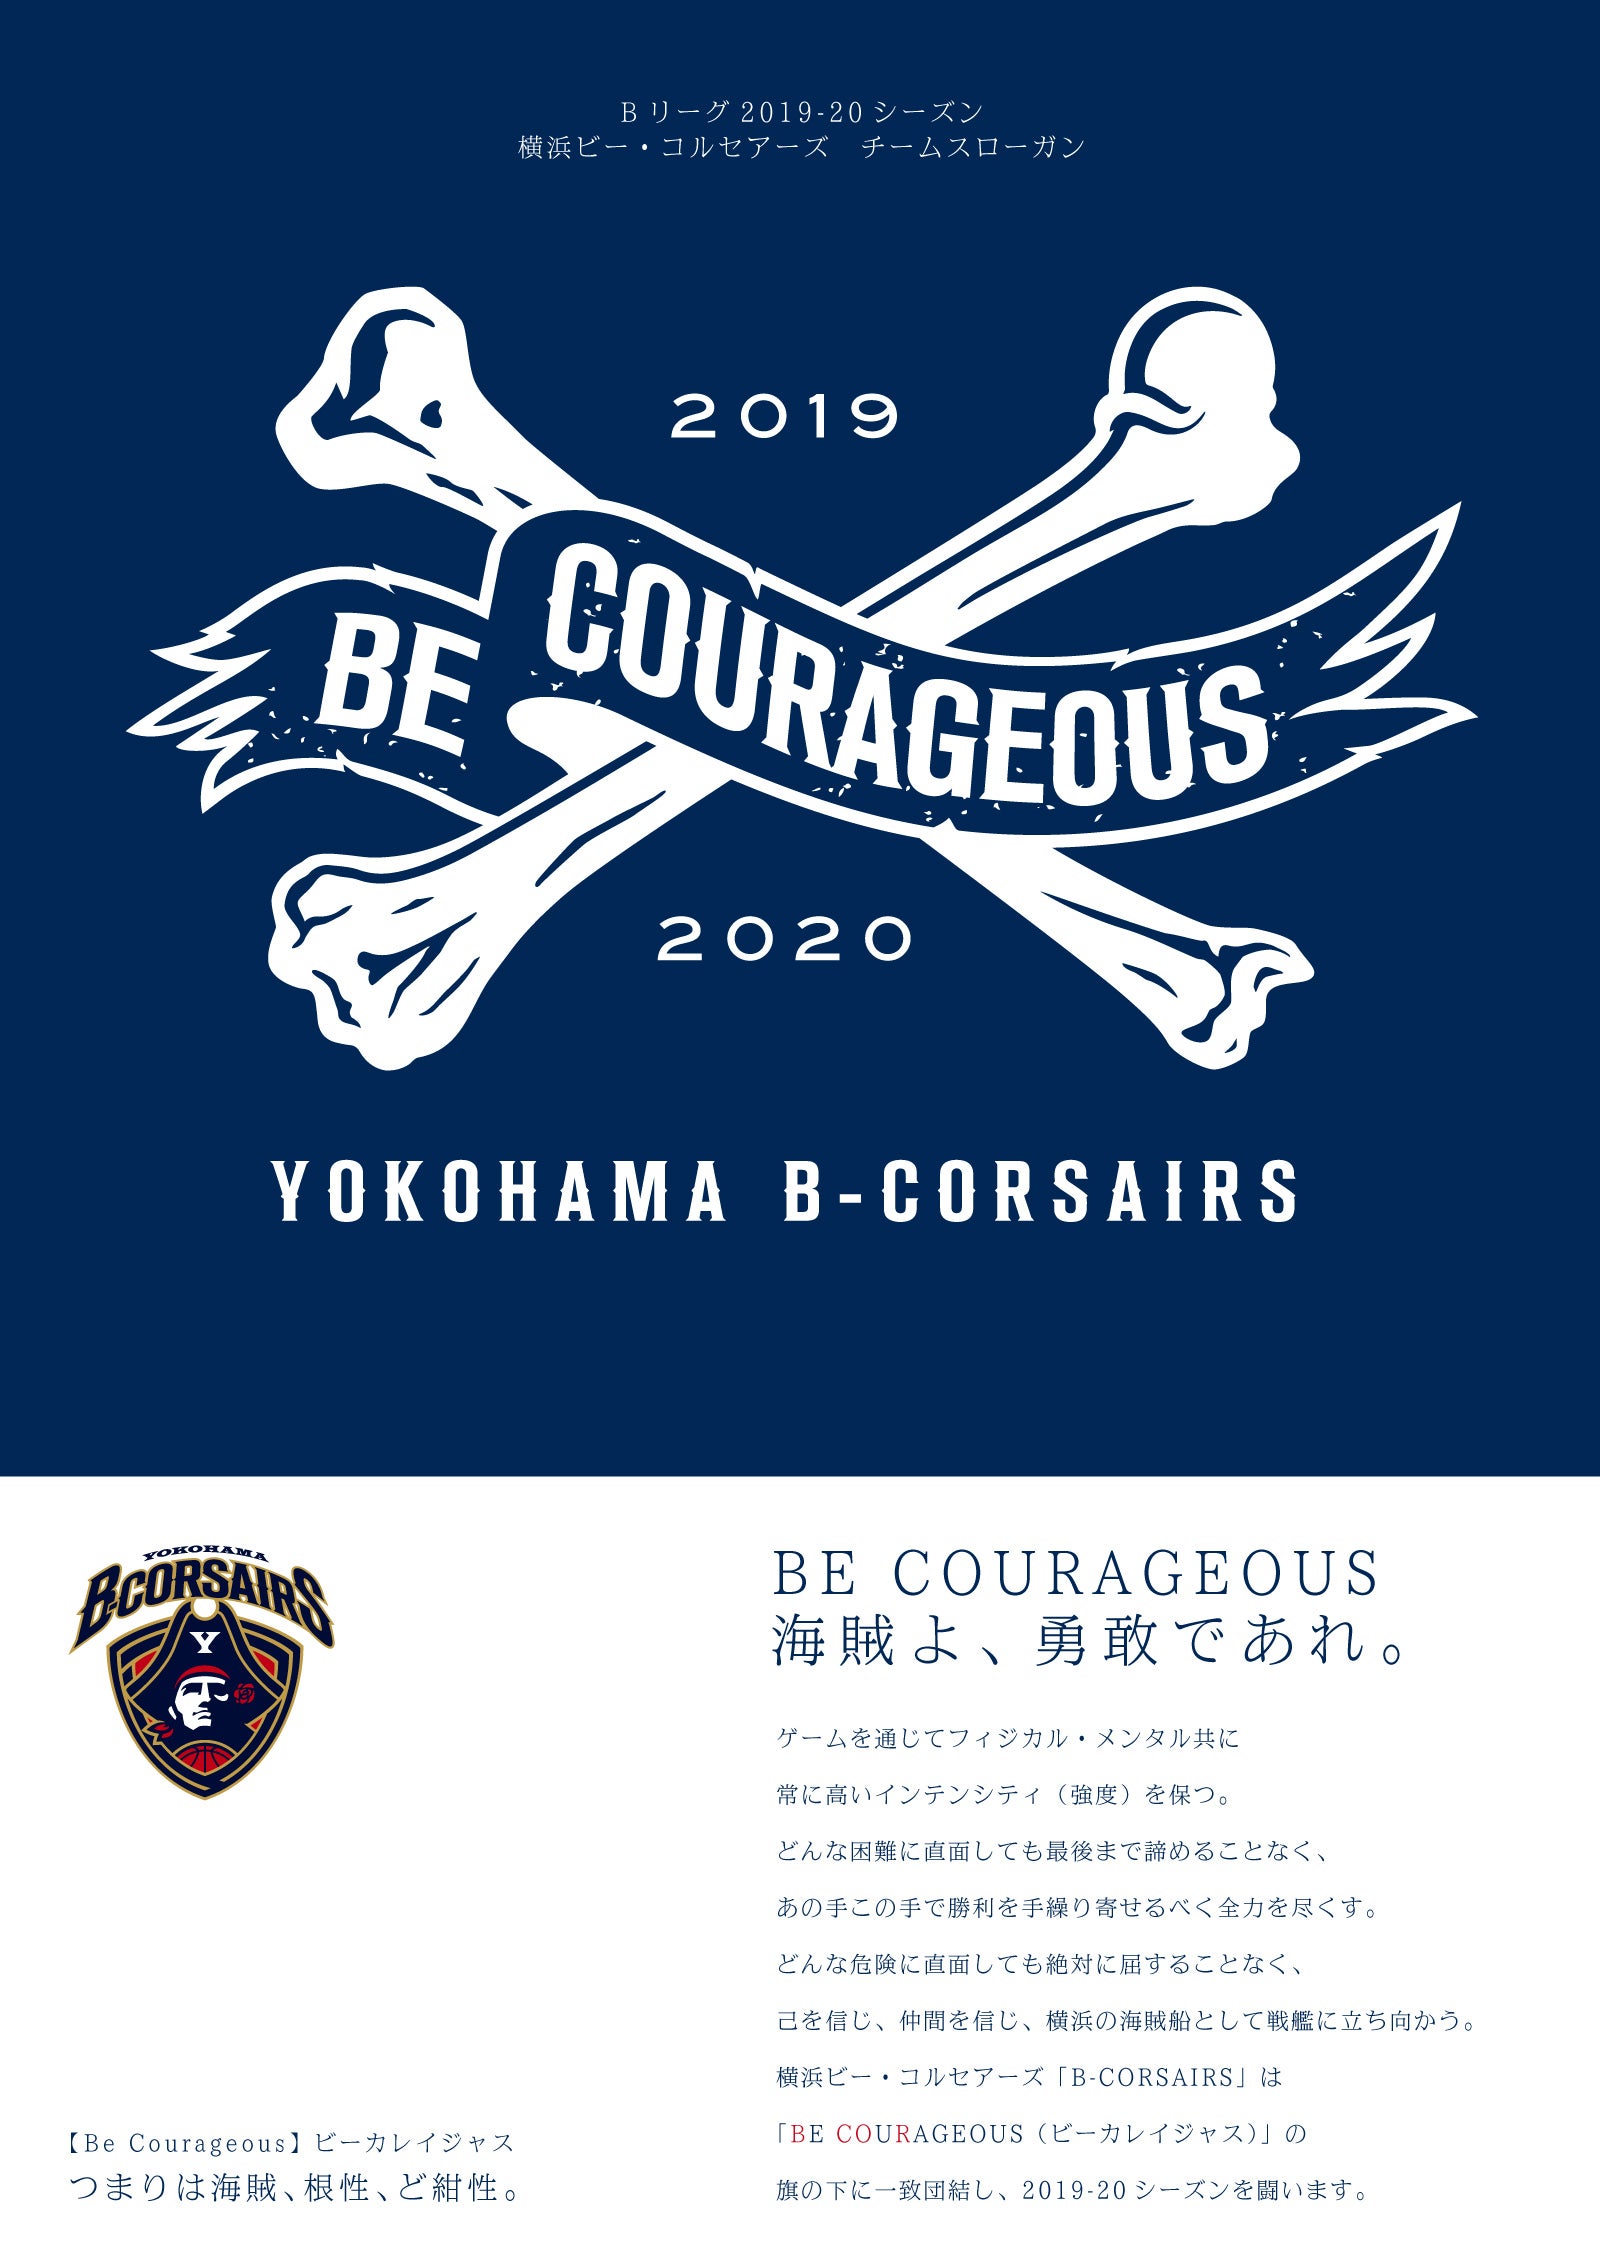 横浜ビー コルセアーズ 19 シーズン チームスローガン決定のお知らせ 横浜ビー コルセアーズ